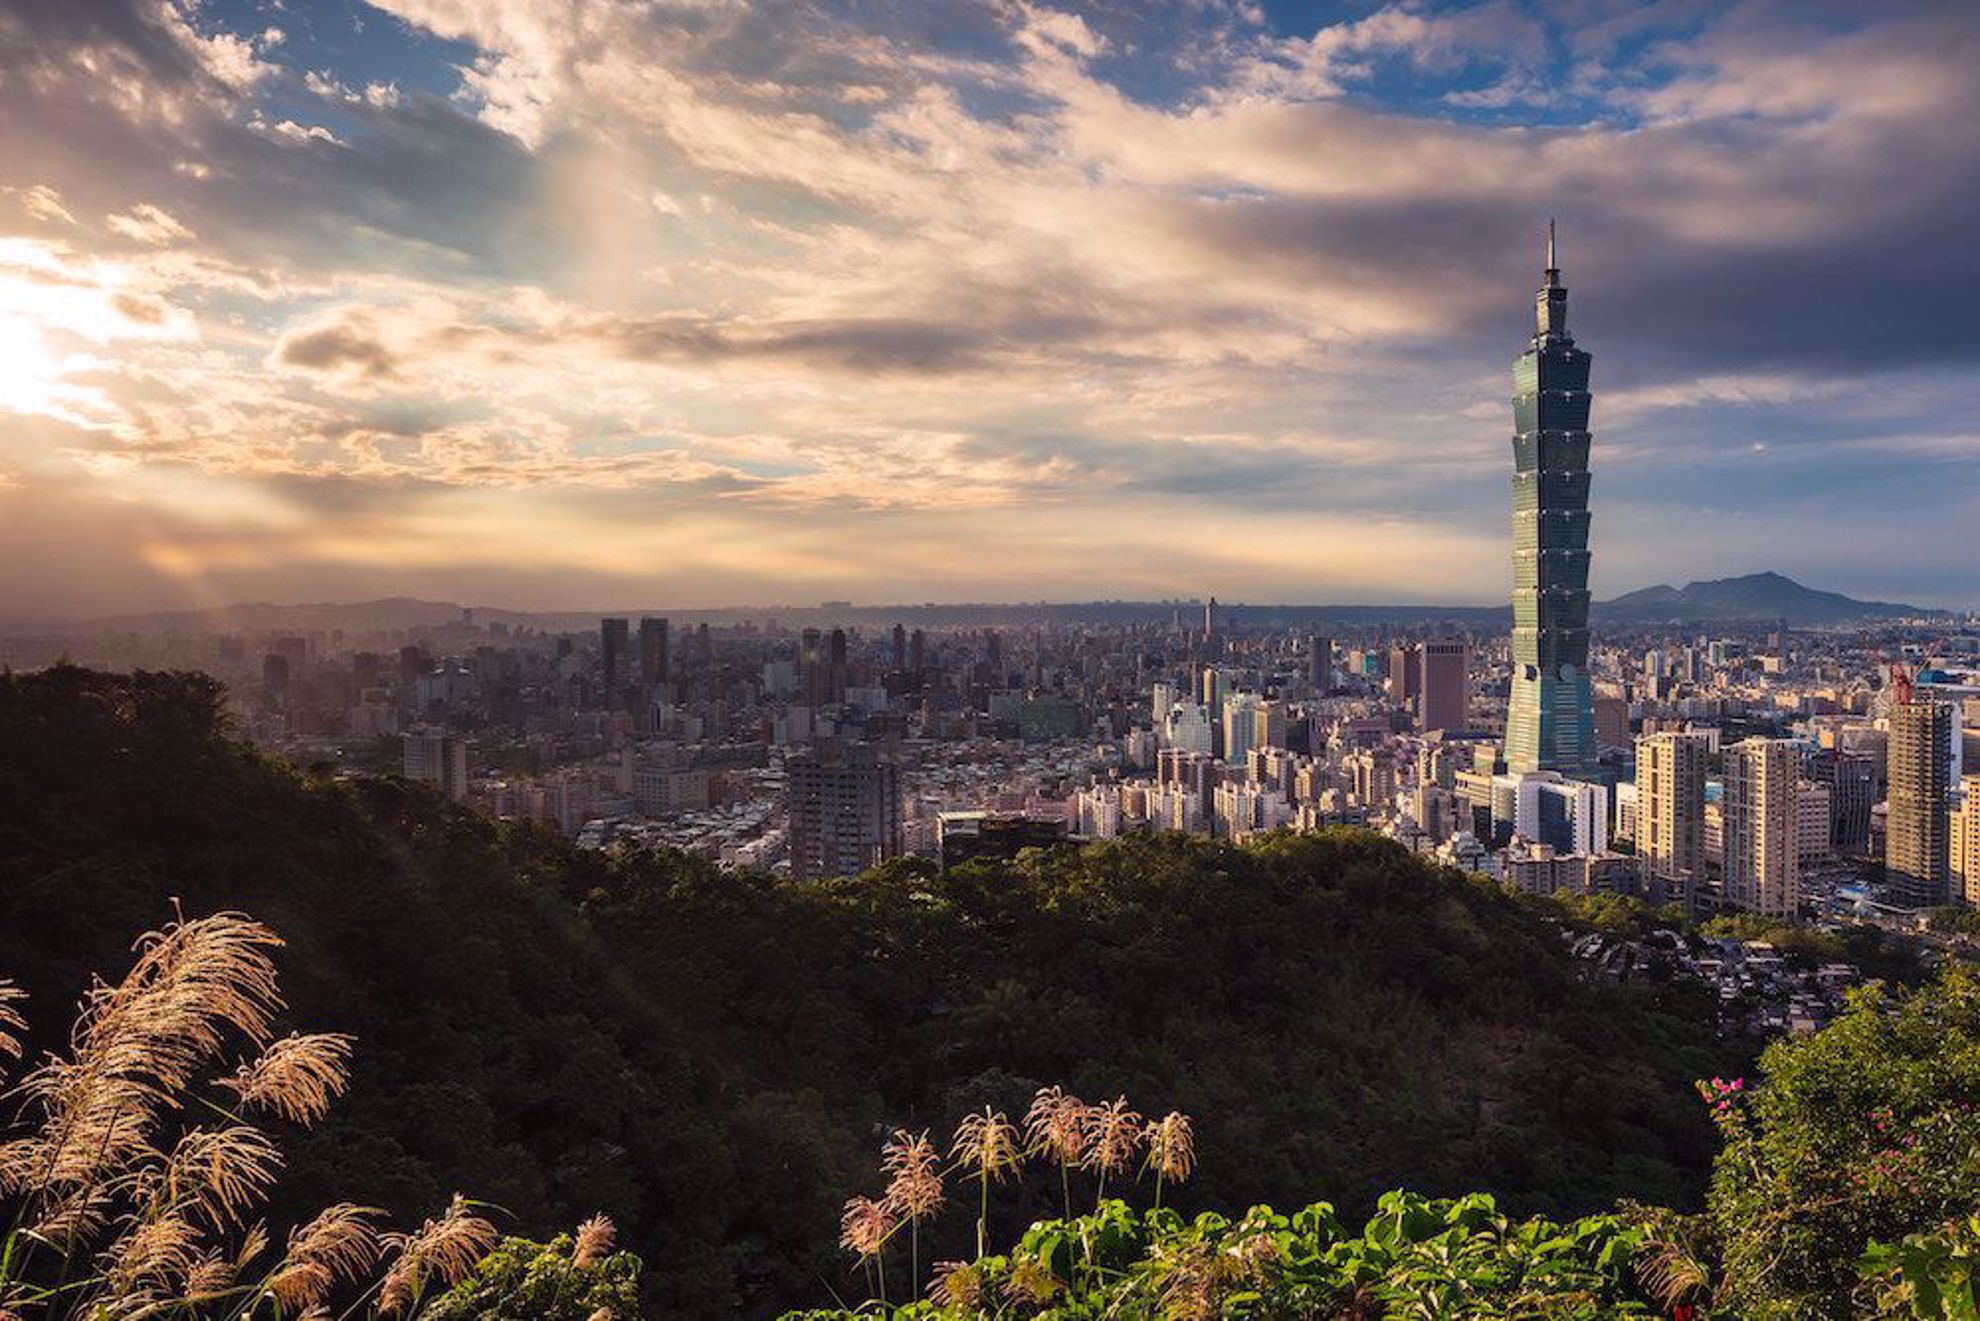 Taipei with tower